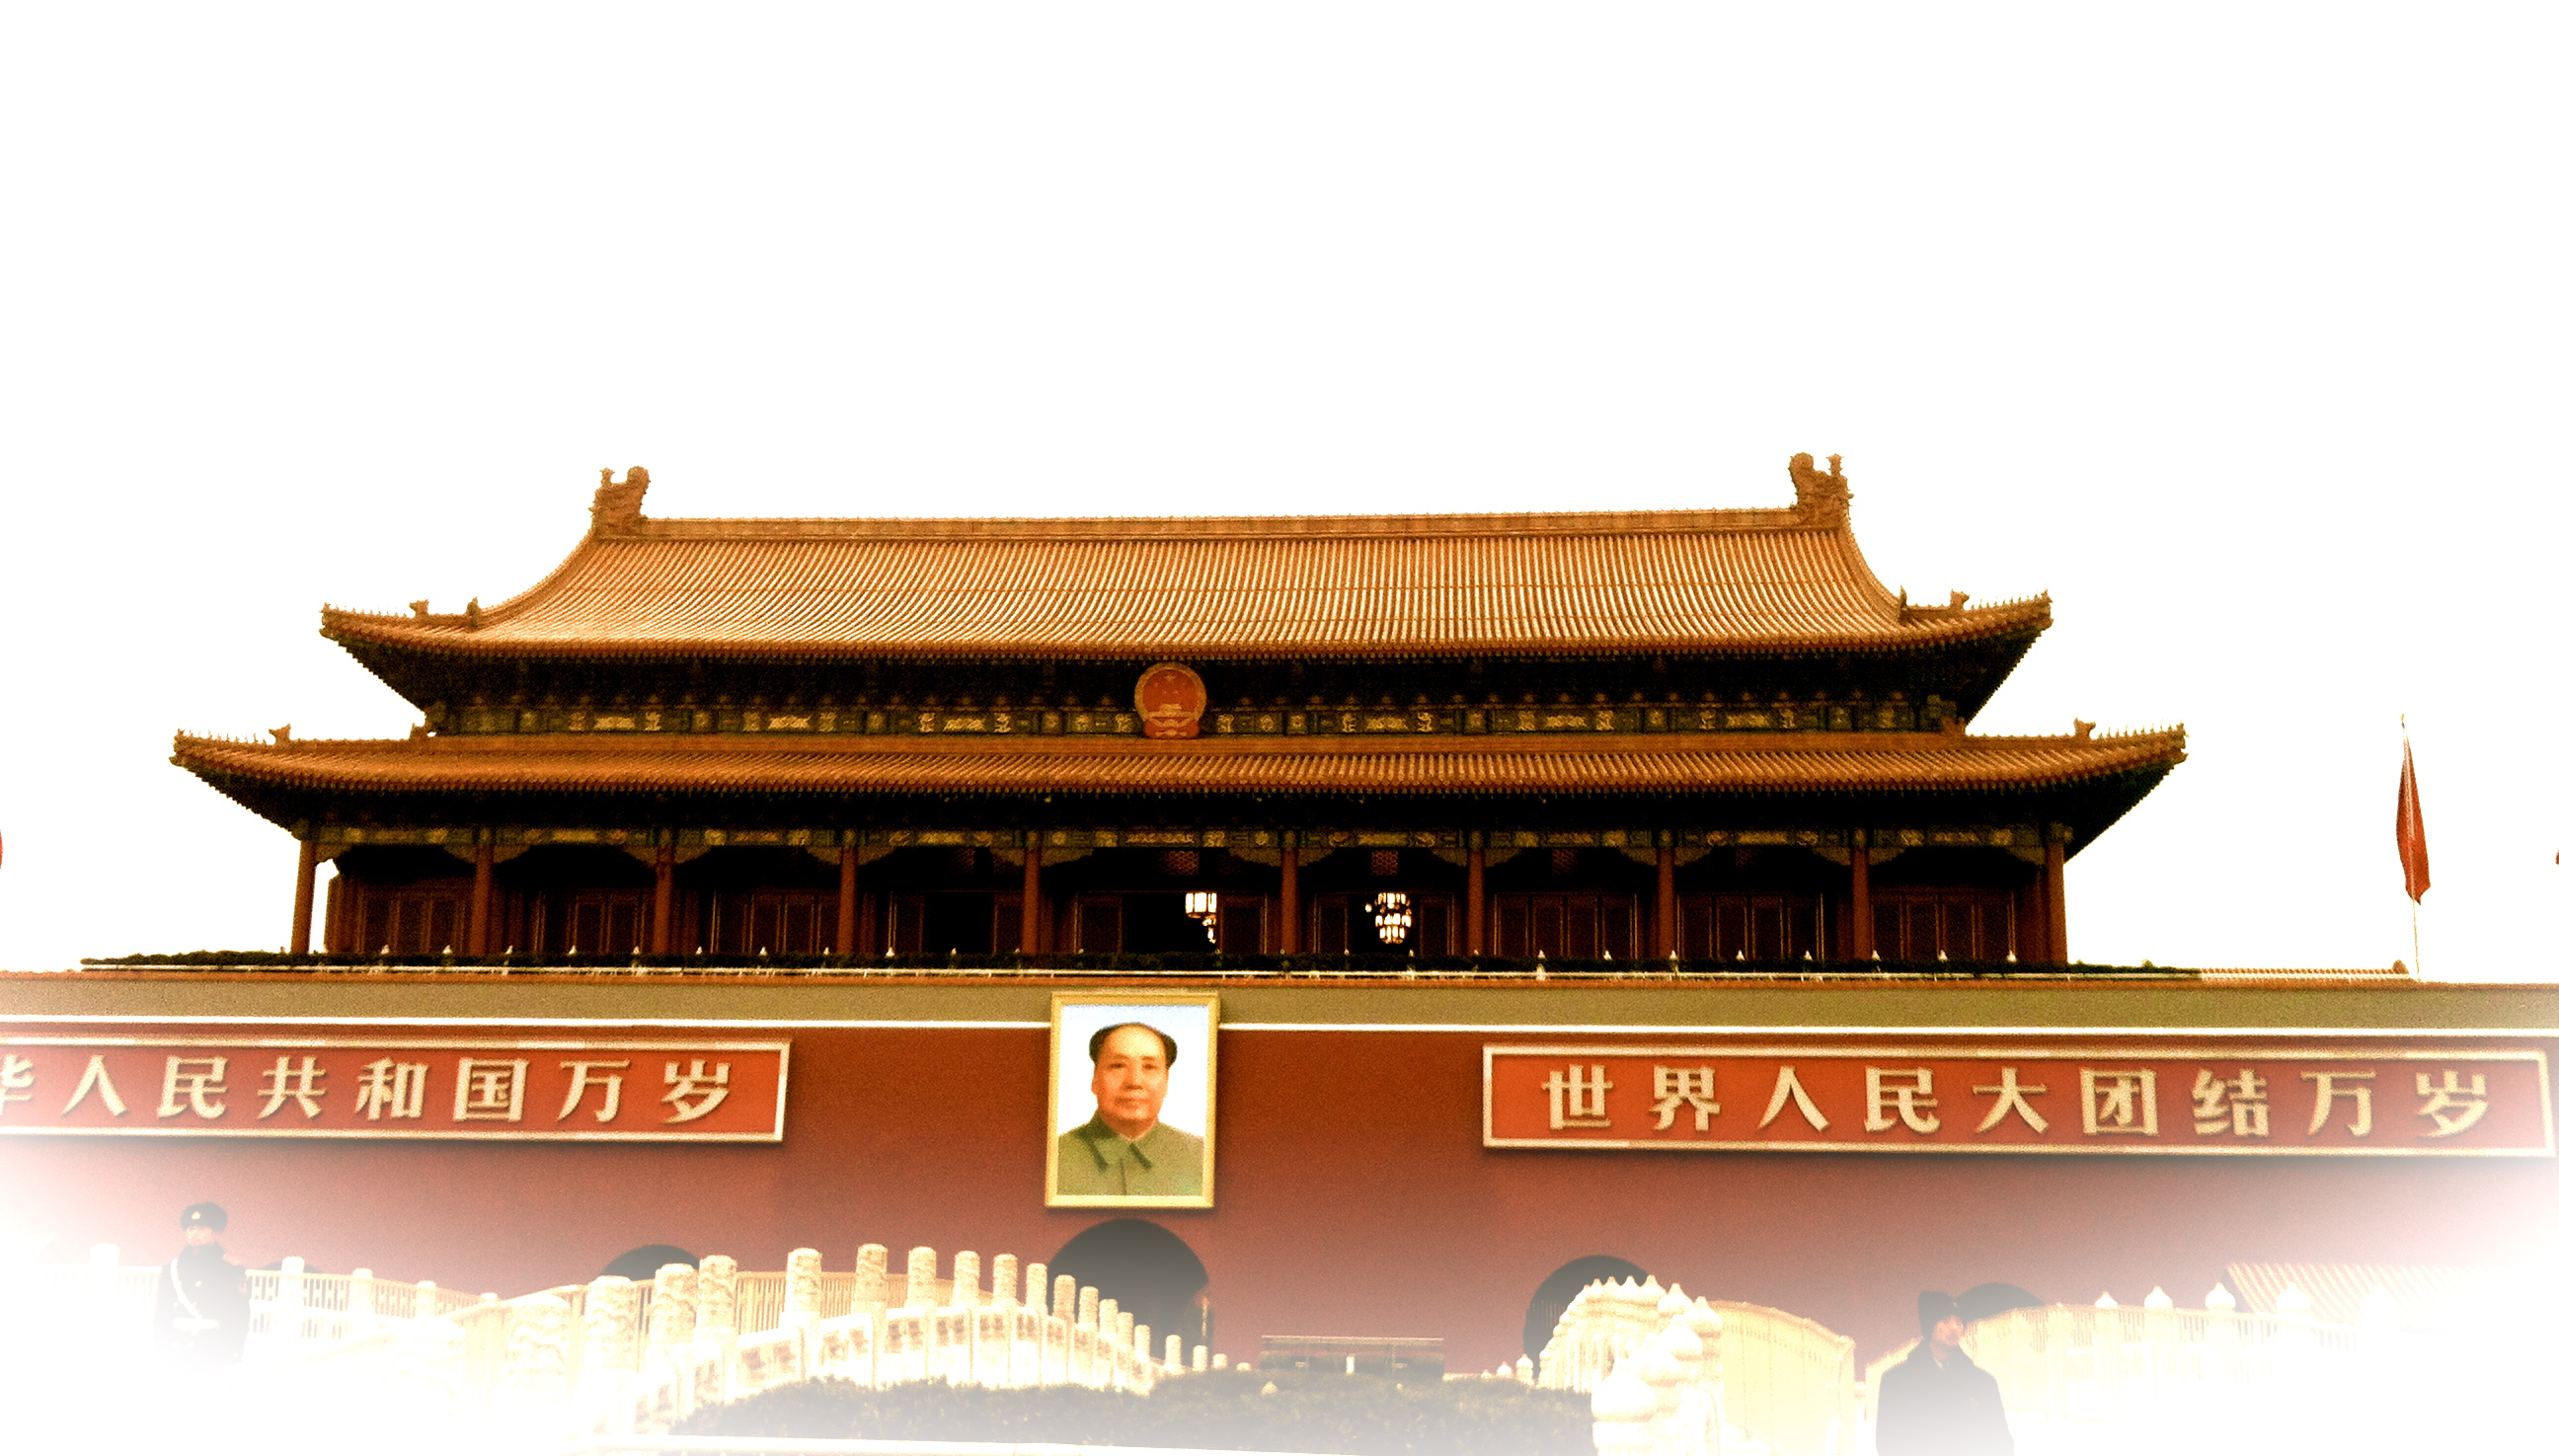 Tiananmen Mao